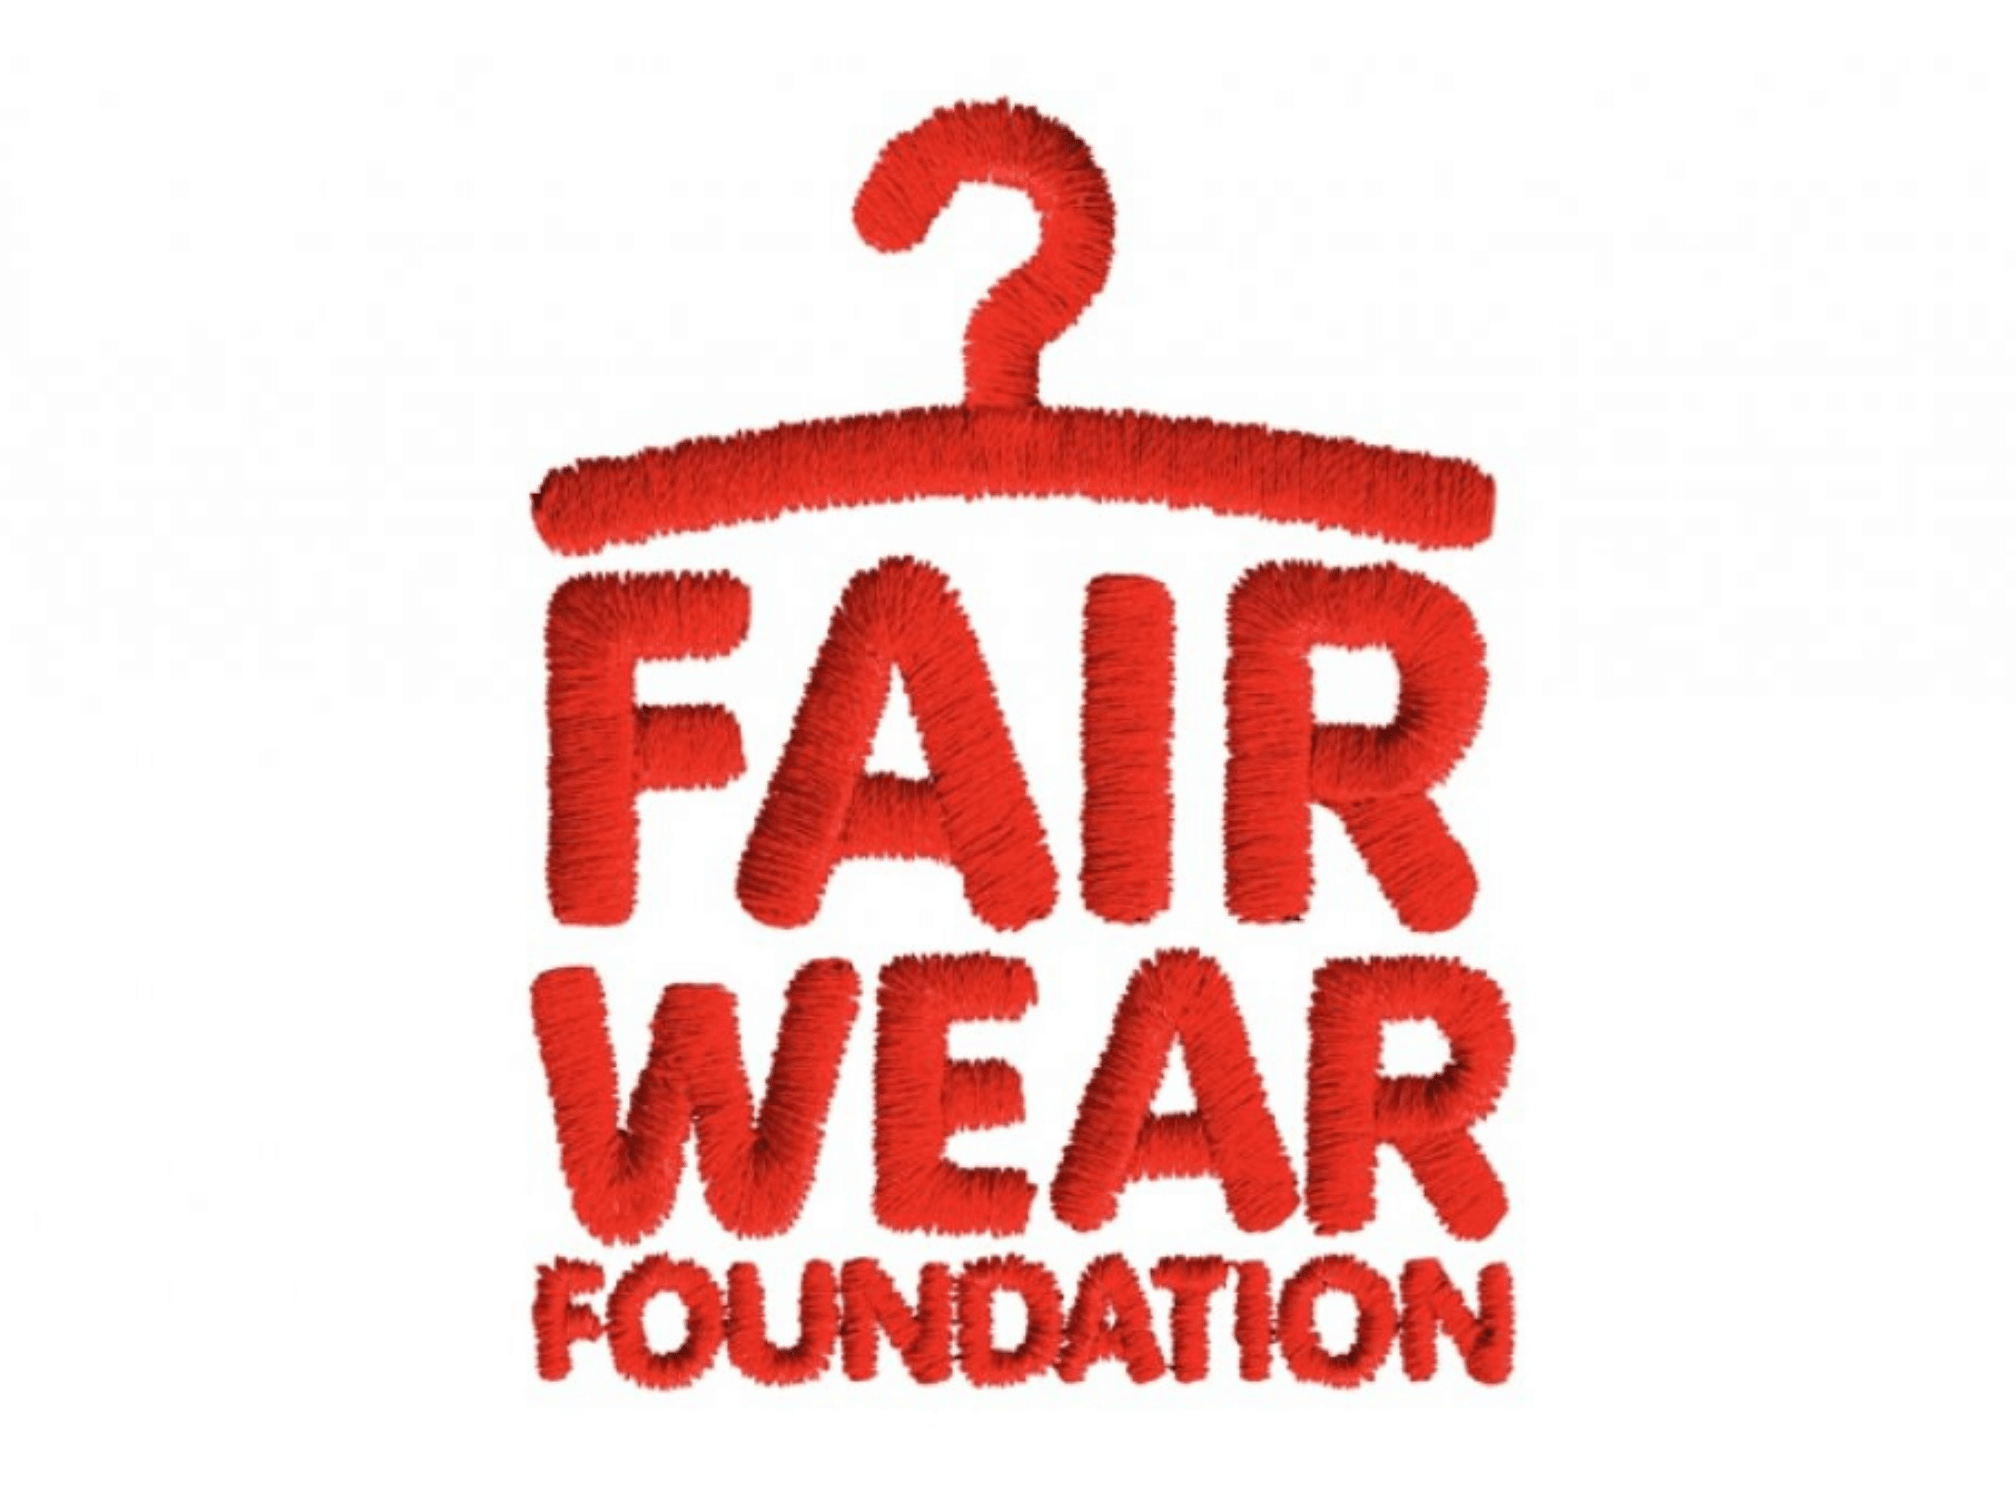 Fair Wear Foundation